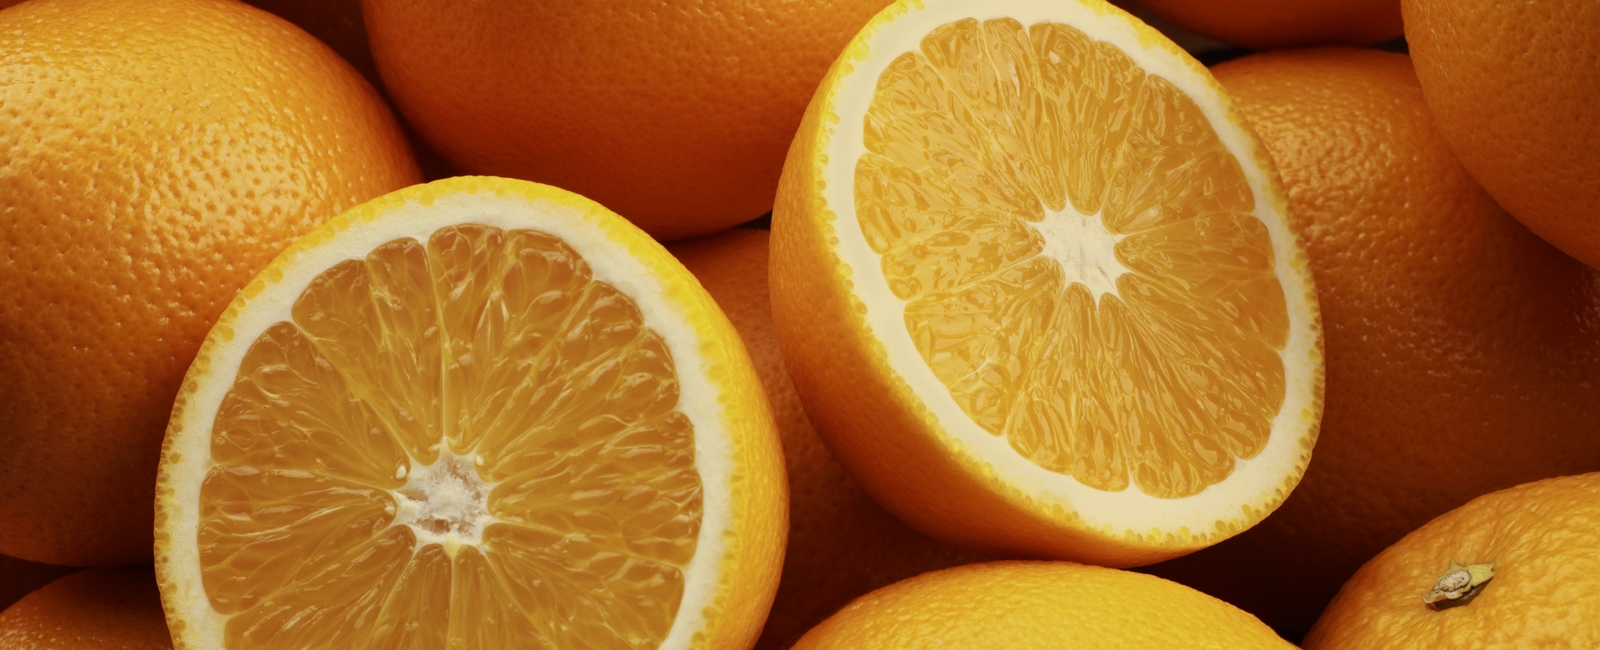 All citrus articles